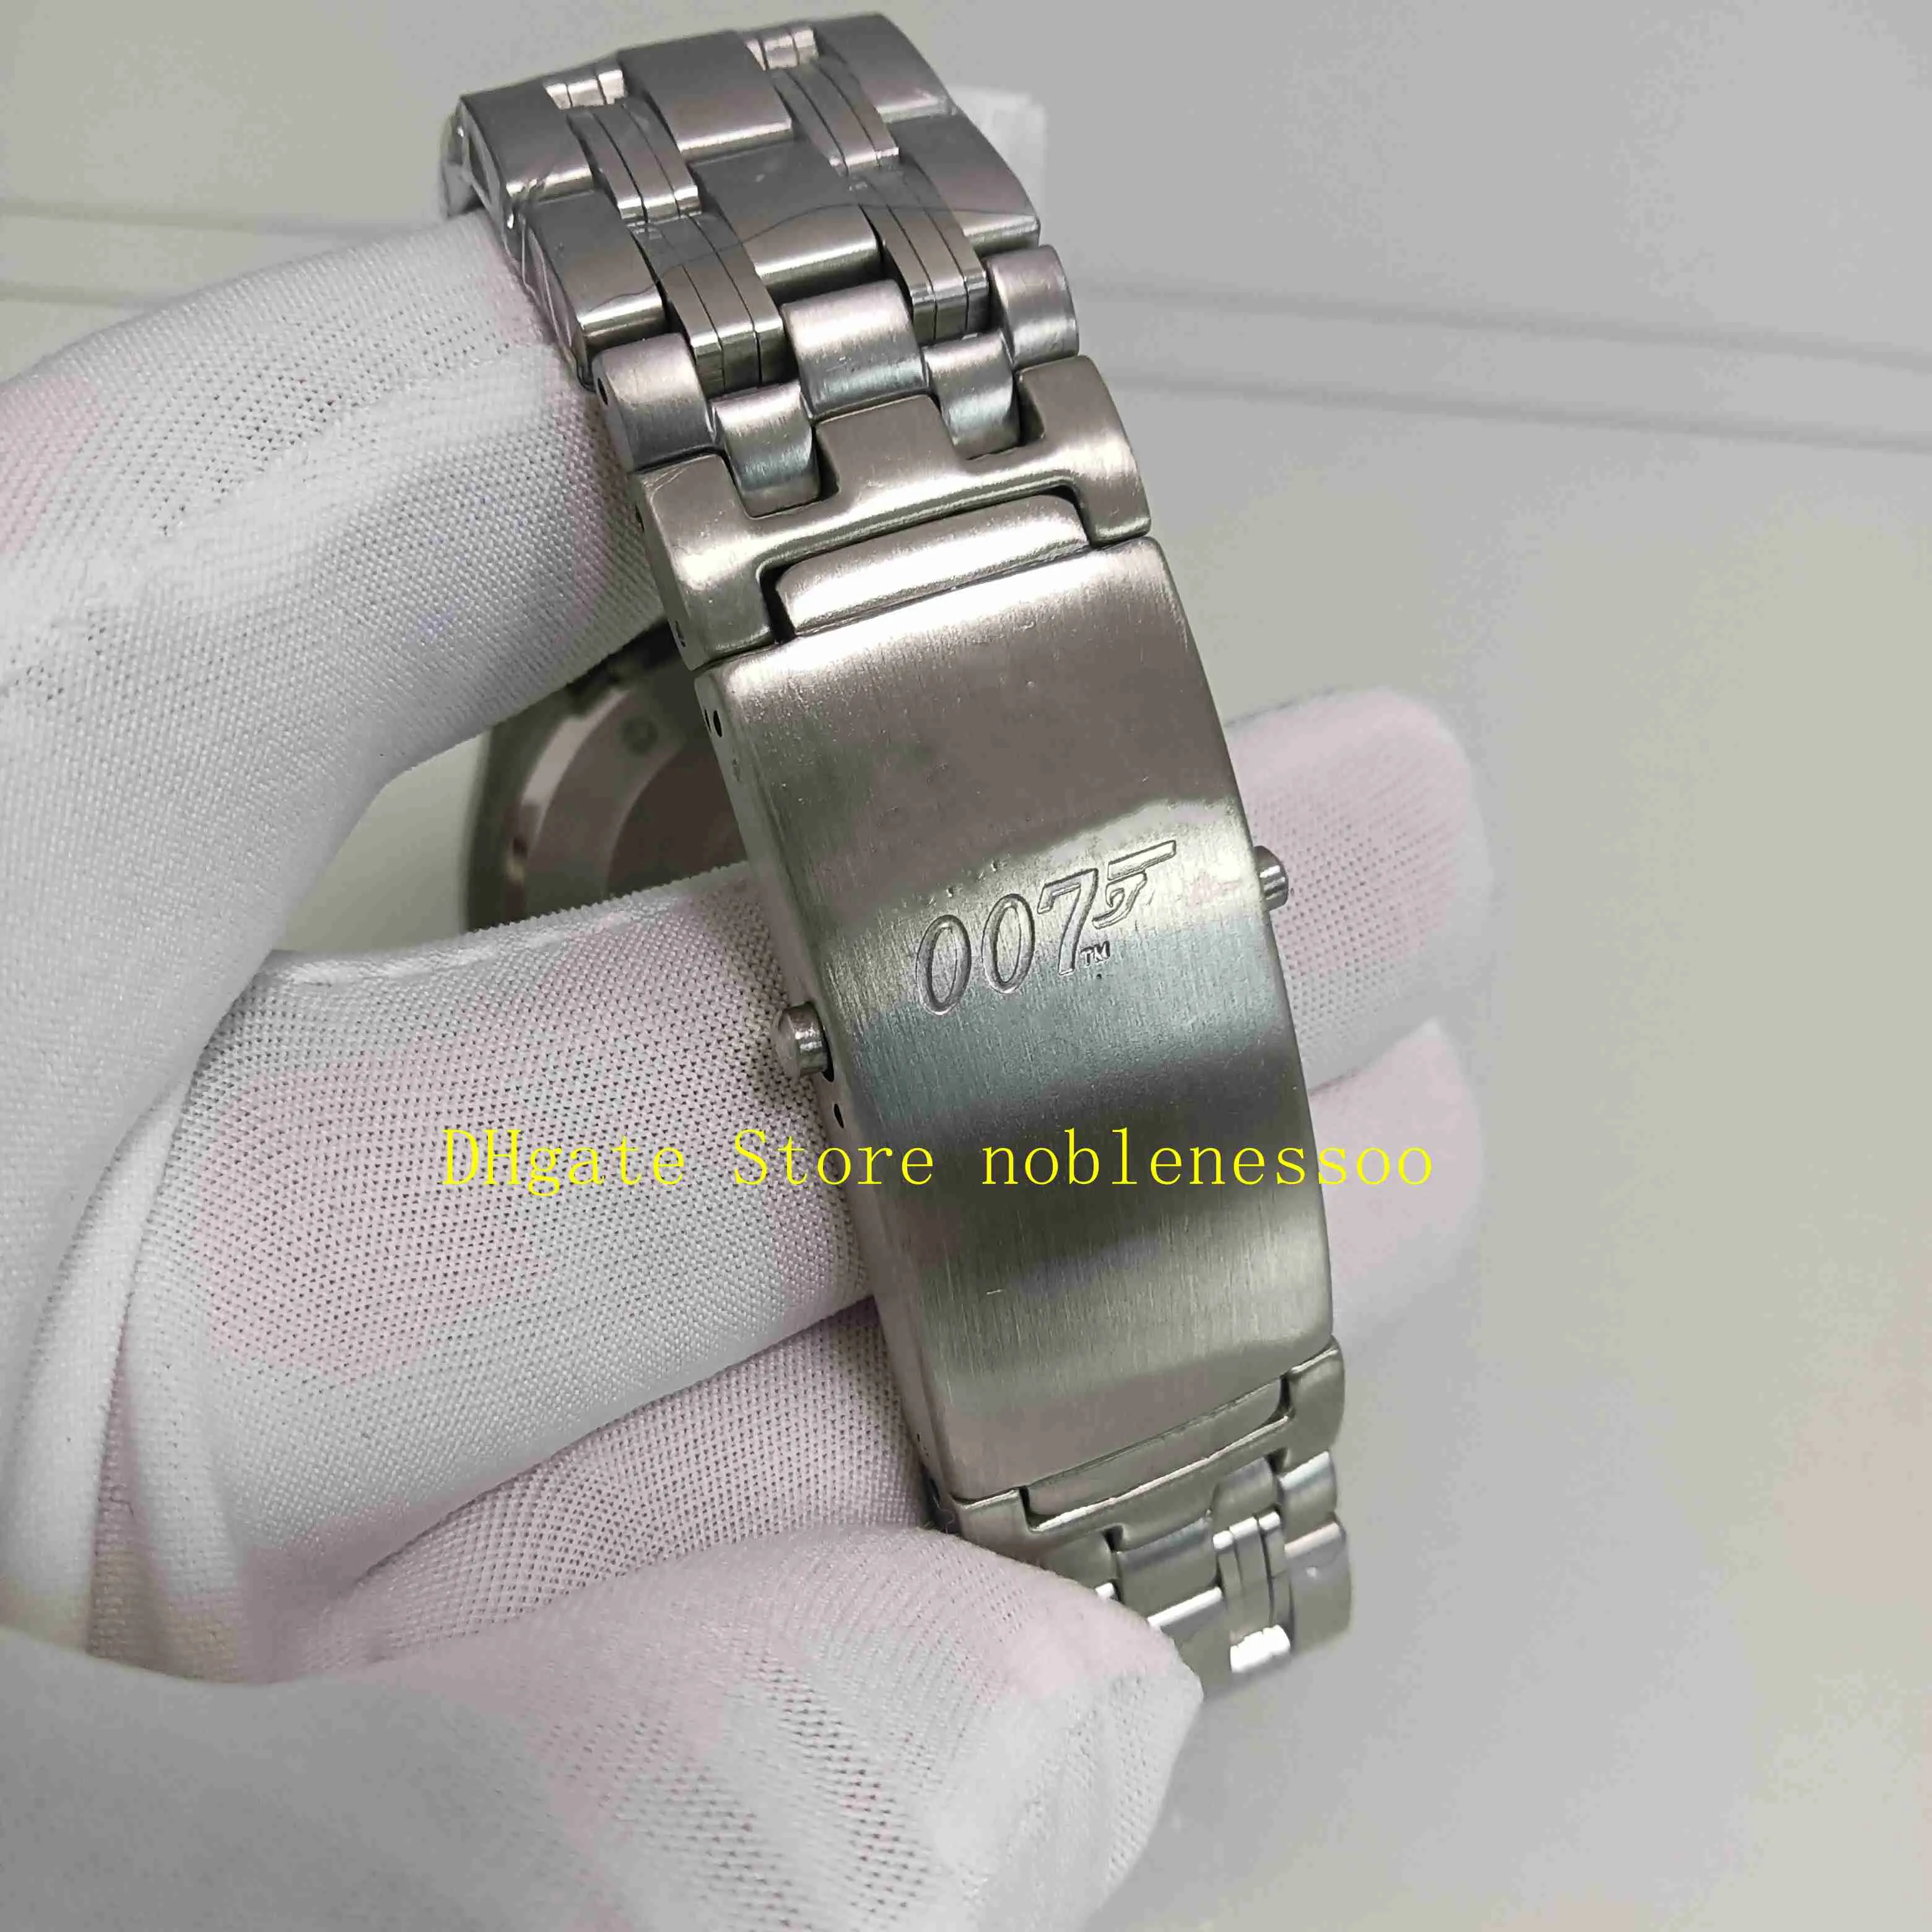 Real po na caixa original relógios automáticos masculinos mostrador azul 007 pulseira de aço inoxidável edição limitada profissional ásia 2812439